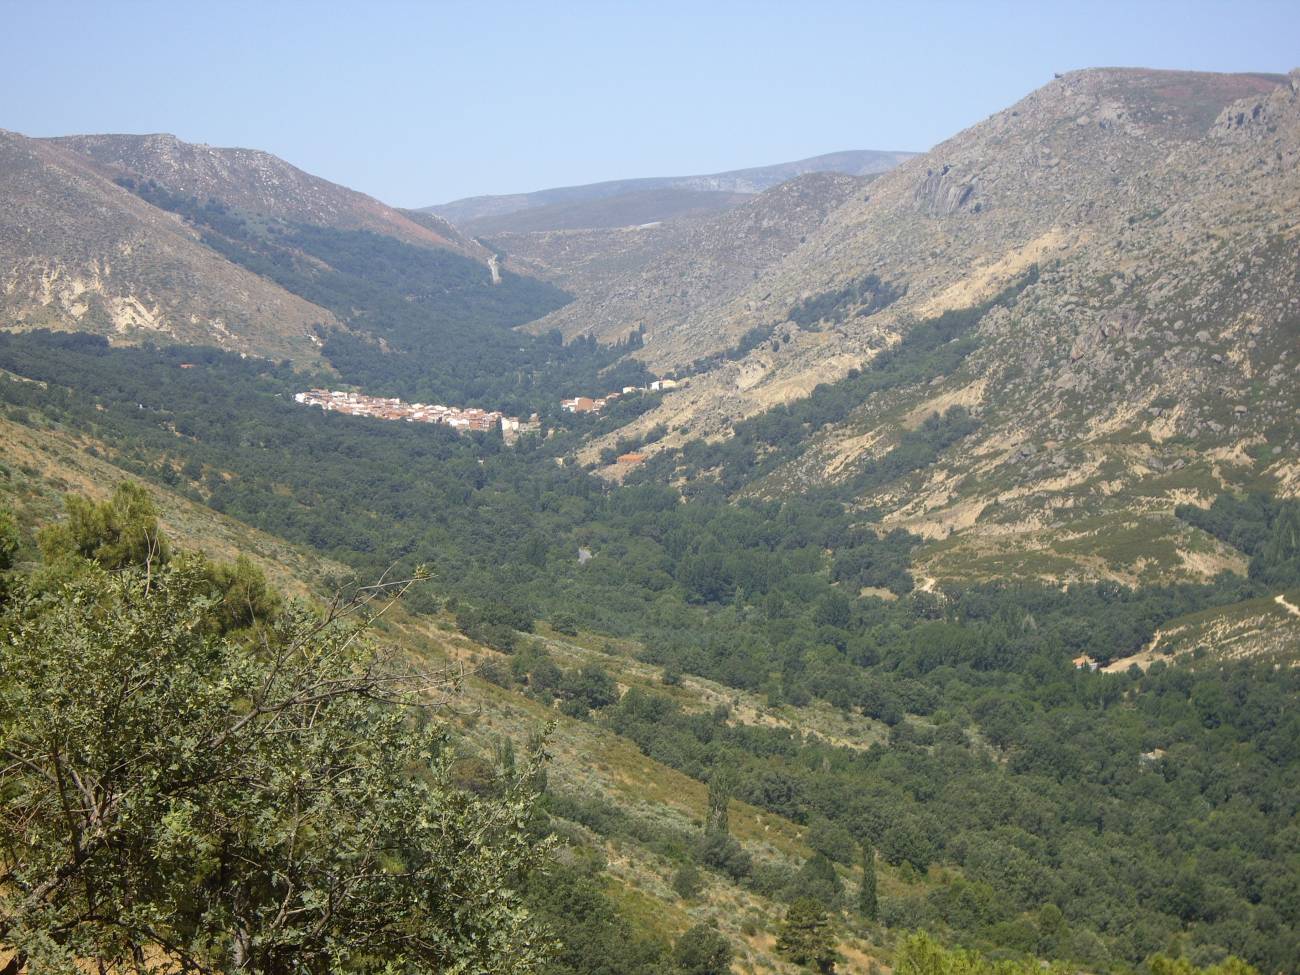 Territorio muy deforestado en la sierra de Gredos, con bosques sólo en las zonas próximas a la garganta. Al fondo el pueblo de Navalacruz. 